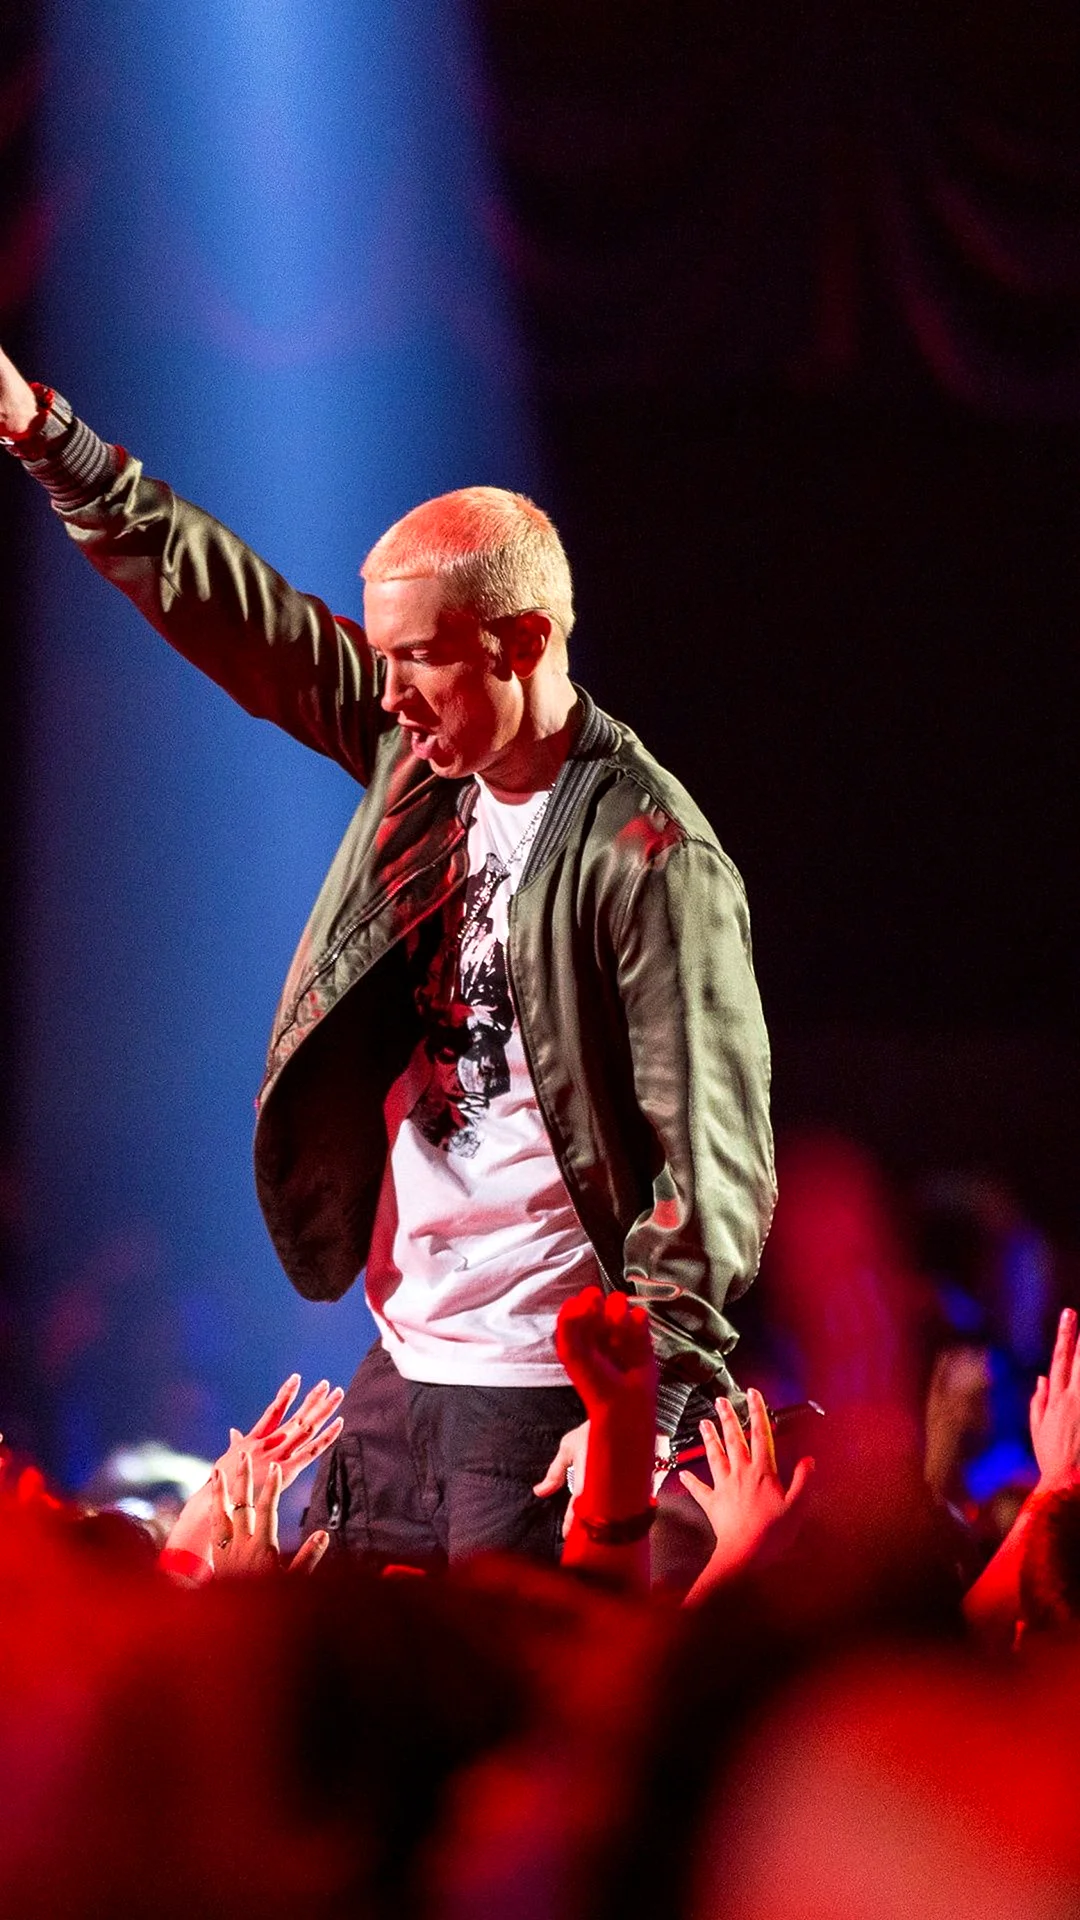 Eminem Concert Wallpaper For iPhone